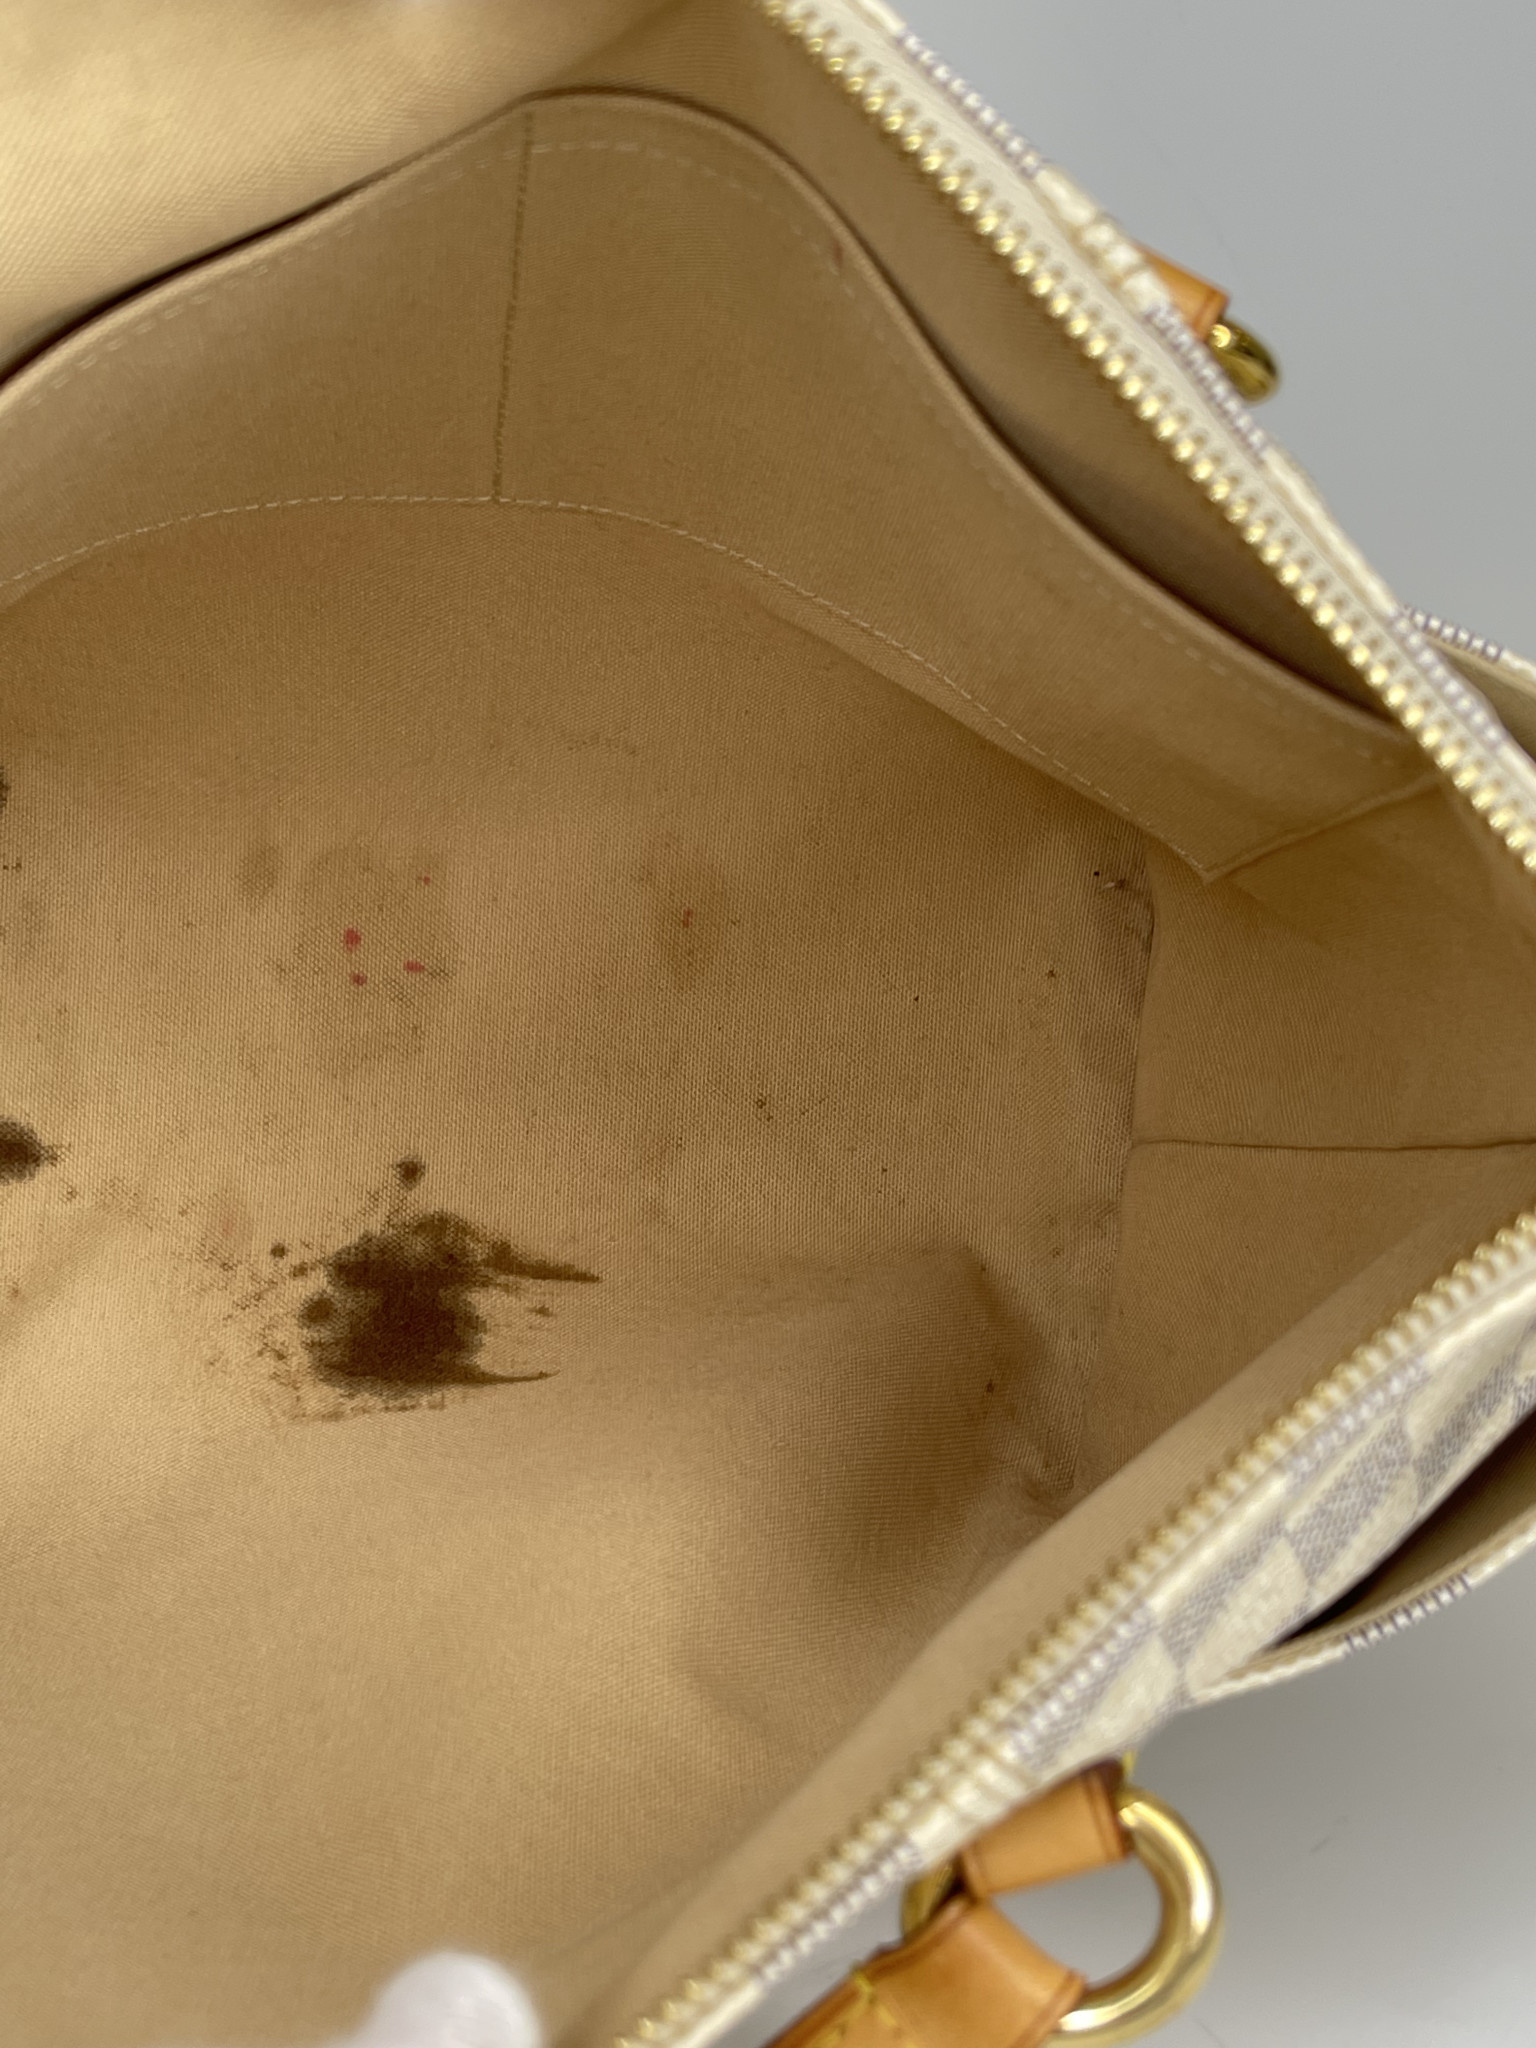 Authentic LOUIS VUITTON Neverfull PM Damier Azur Tote Bag Purse #49198